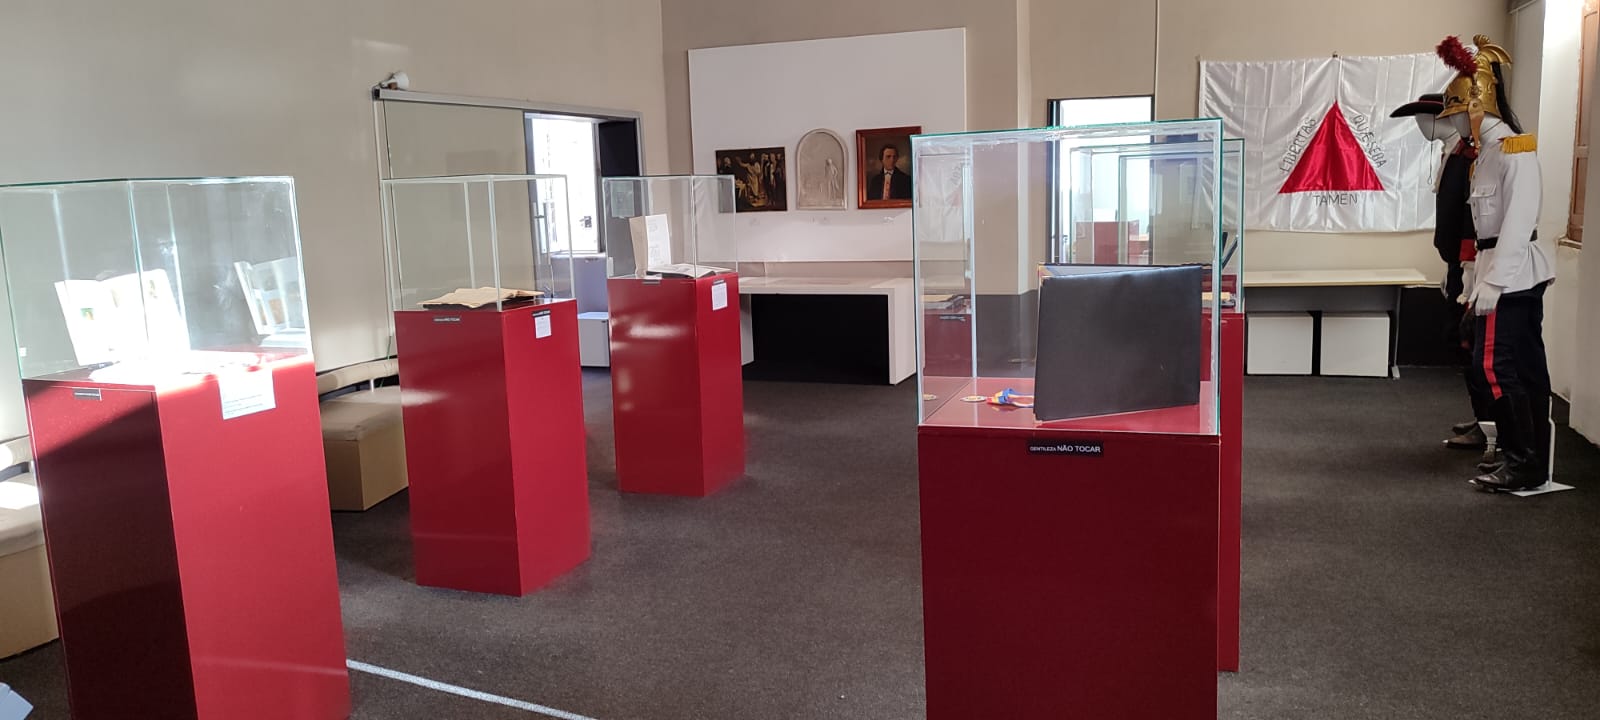 Museu dos Militares Mineiros inaugura exposição sobre Tiradentes, mártir da Inconfidência Mineira